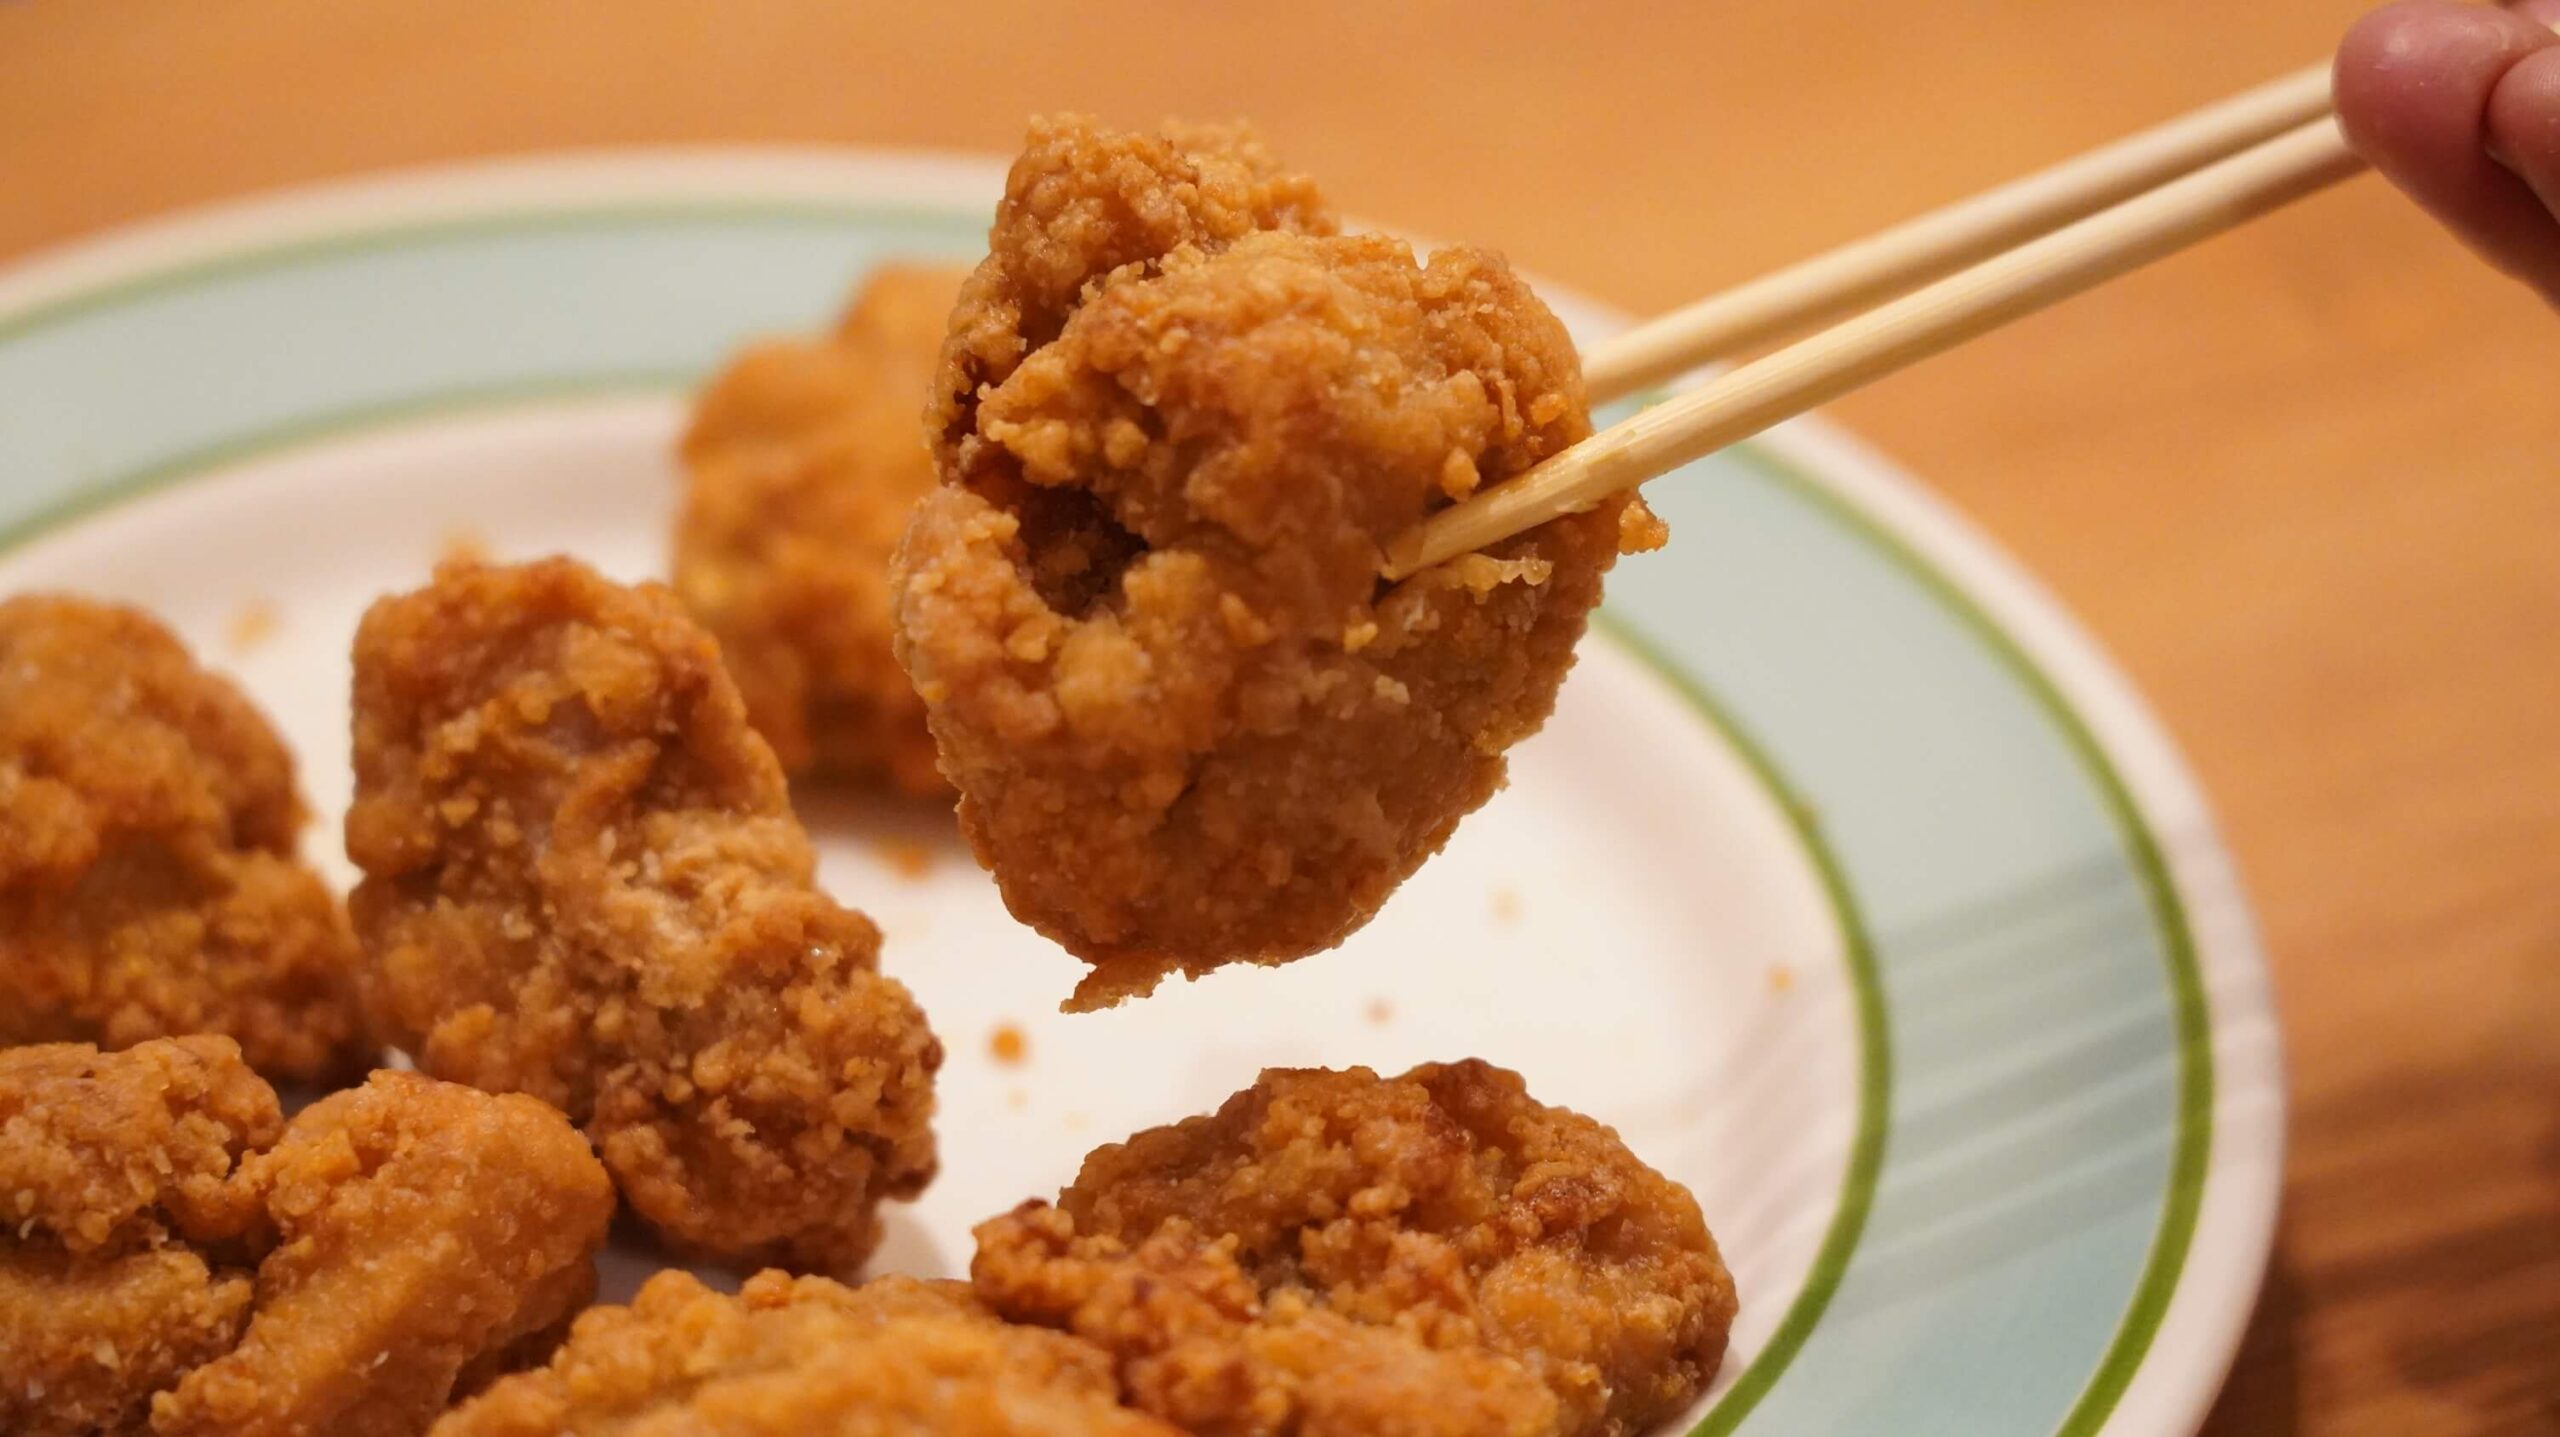 イオン・トップバリュ(TOPVALU)の冷凍食品「若鶏の竜田揚げ」を箸でつまんでいる写真